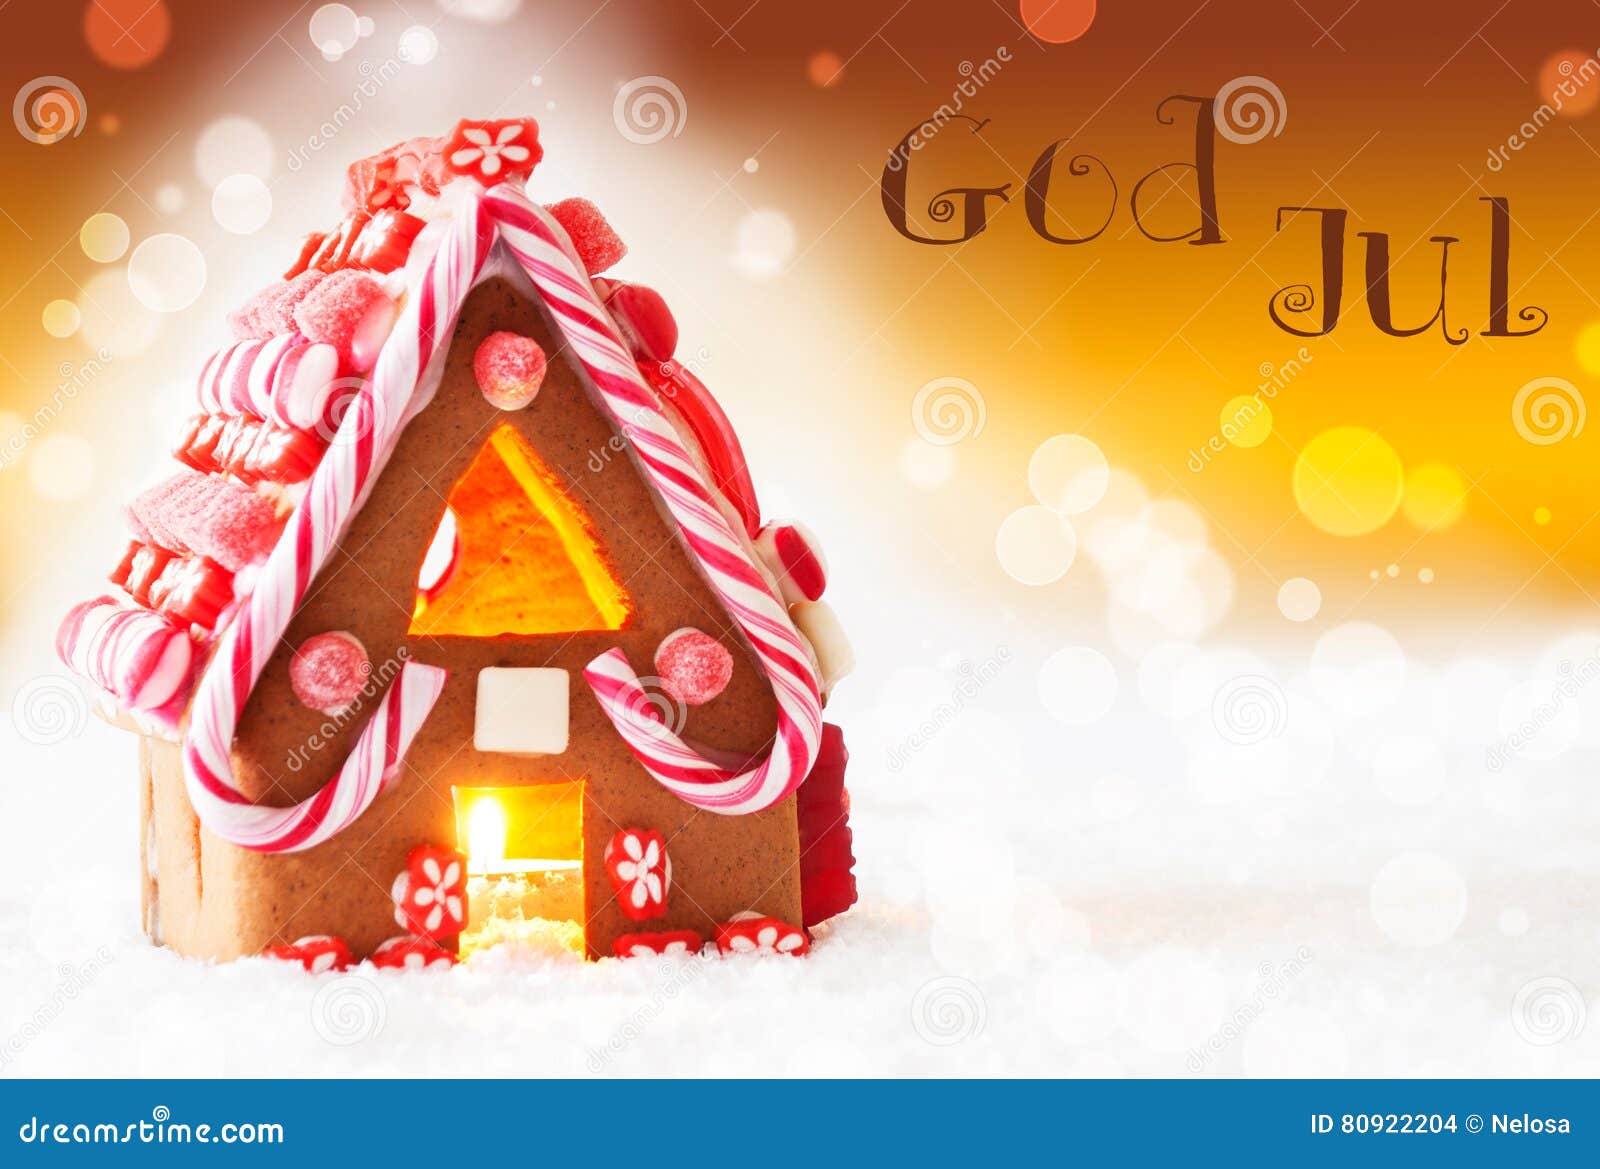 Lebkuchen-Haus, Goldener Hintergrund, Gott Jul Bedeutet ...